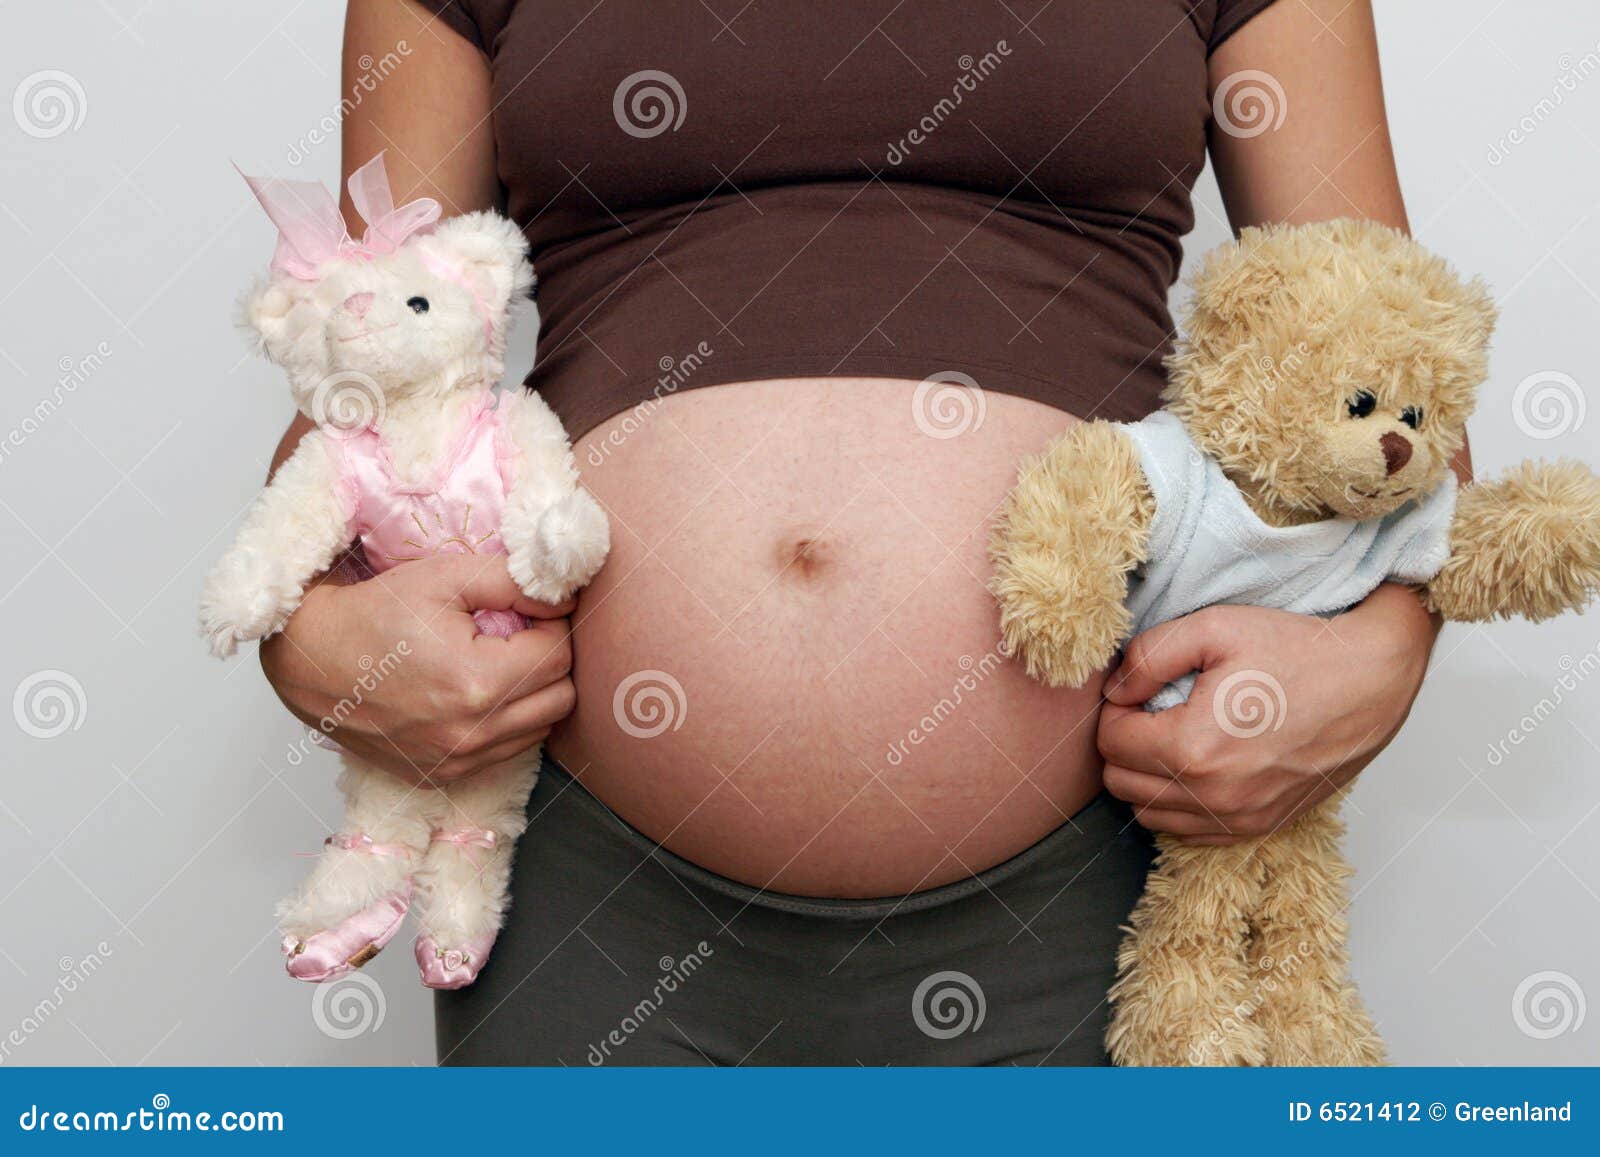 Stuffed girl bellies